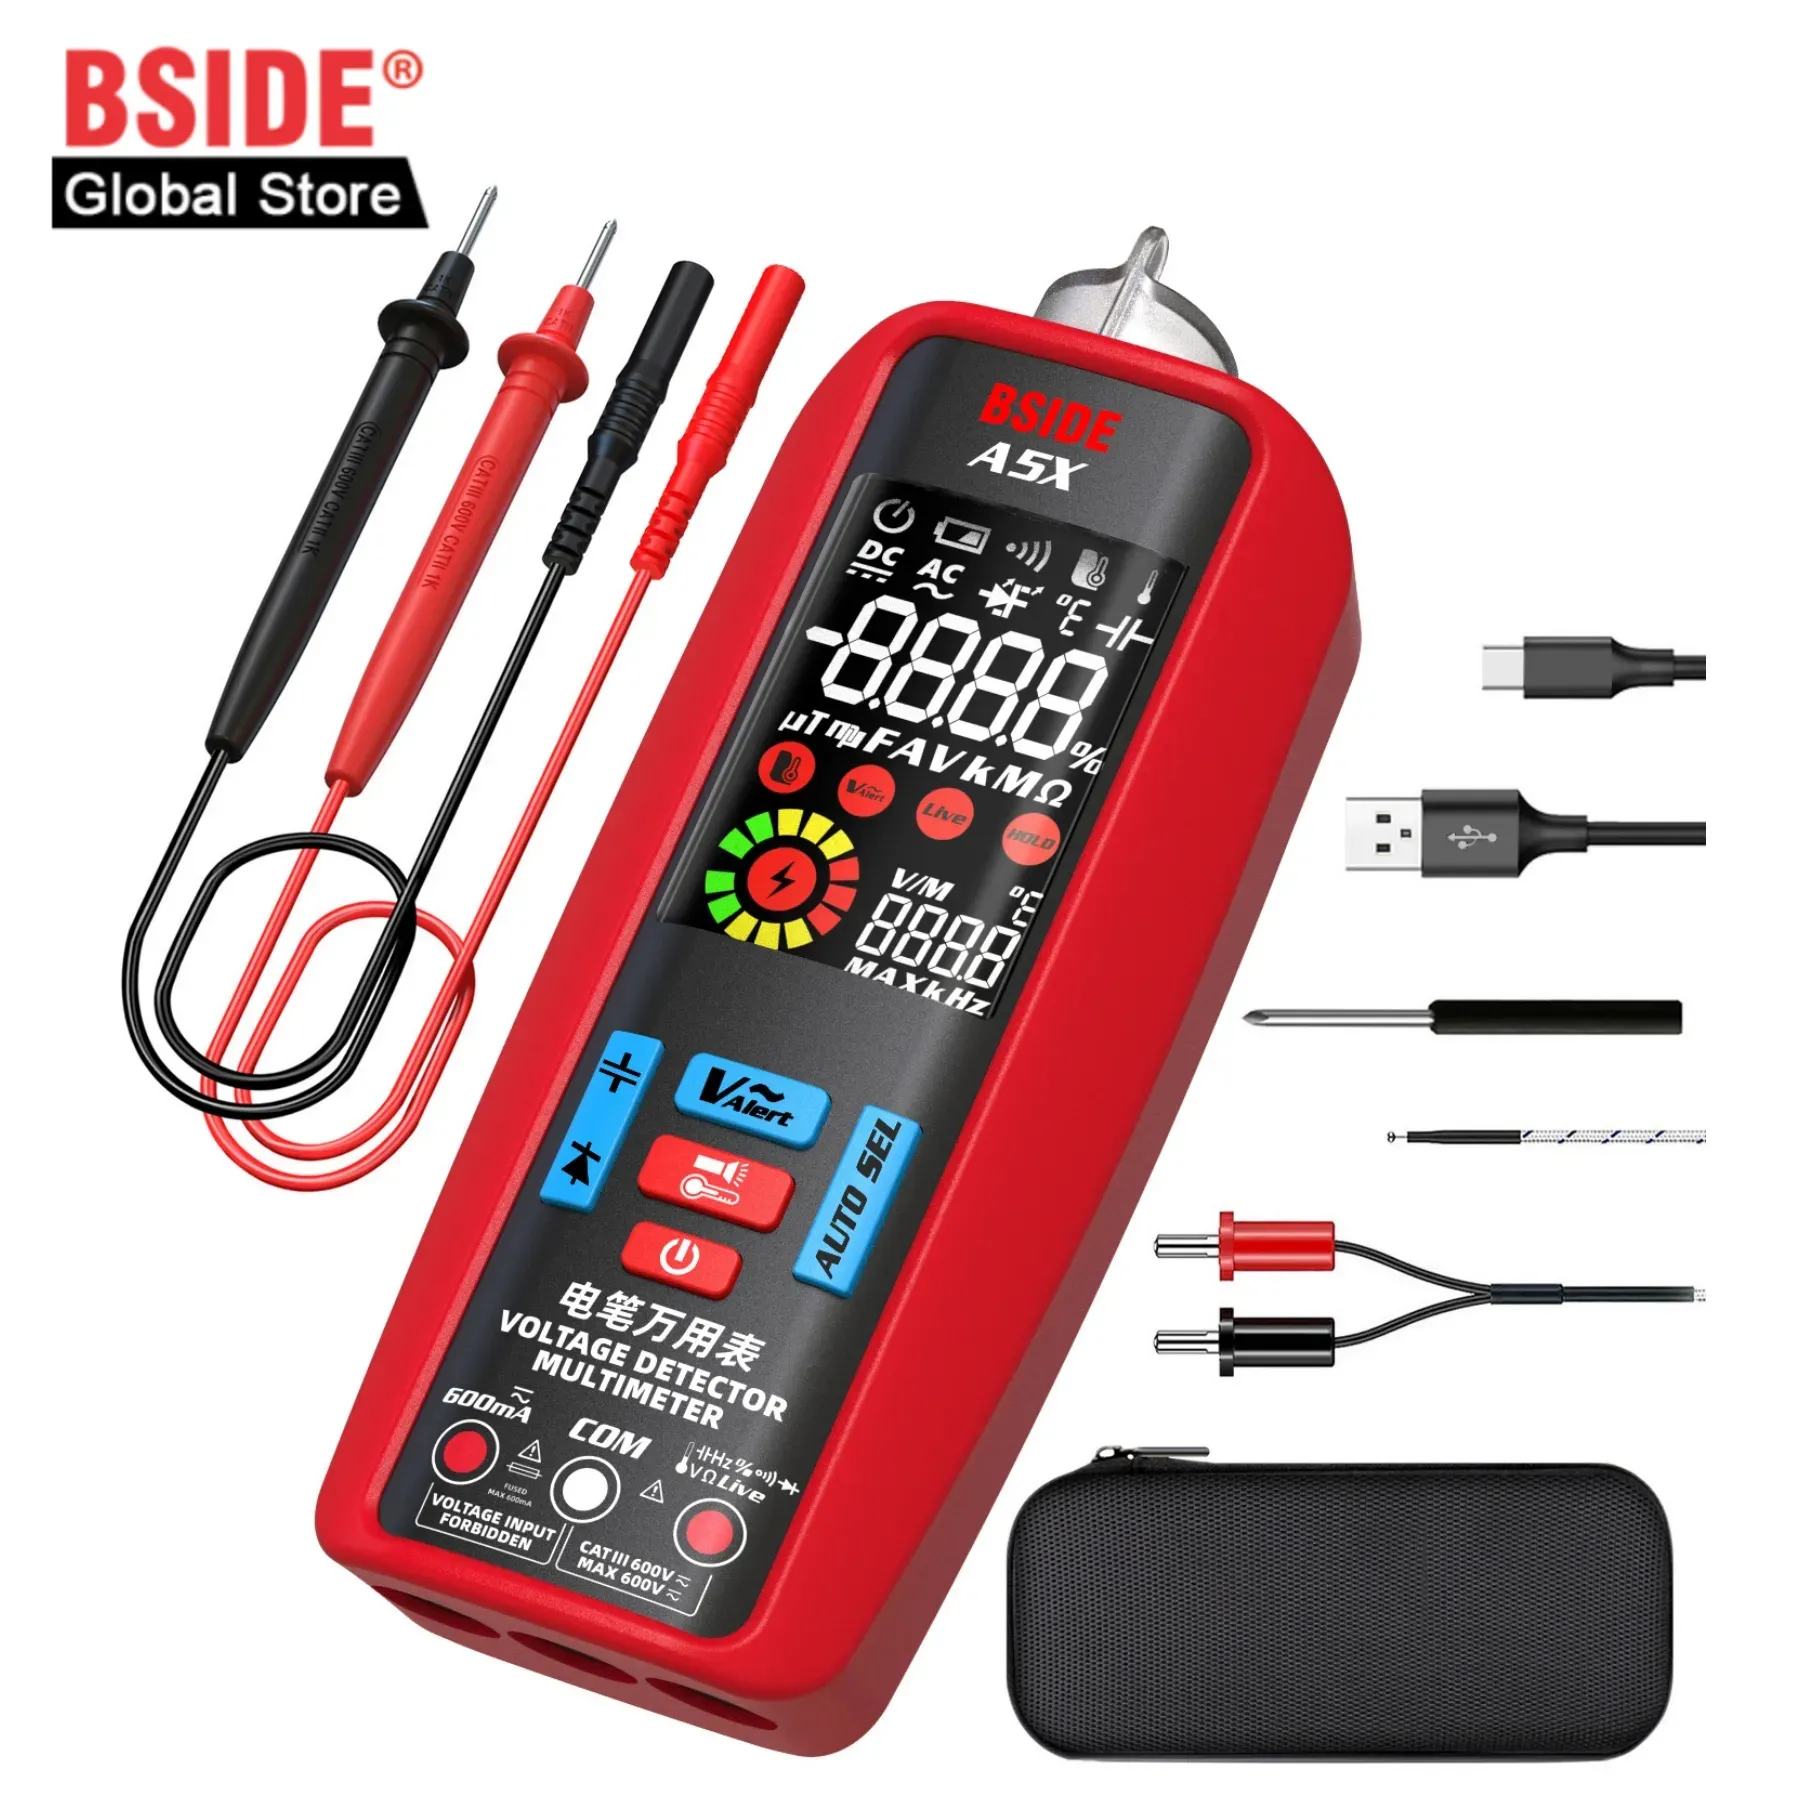 BSIDE A5 puntaliマルチサービスアクセスネットワークテスターマルチメーターテストリード単相AC電流計デジタル電圧計